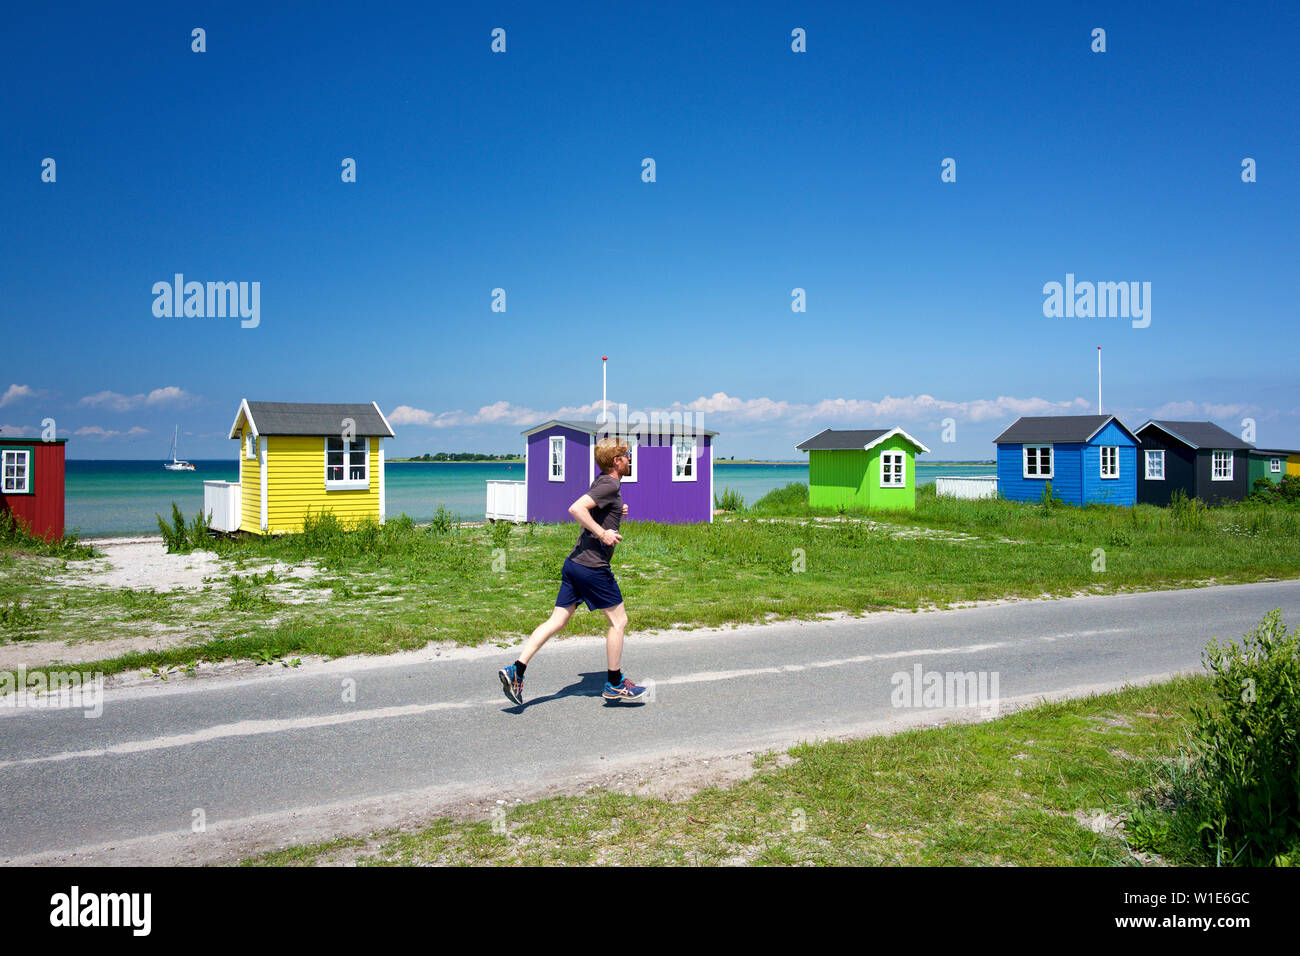 Running past beach huts, Aeroskobing, Aero, Denmark Stock Photo